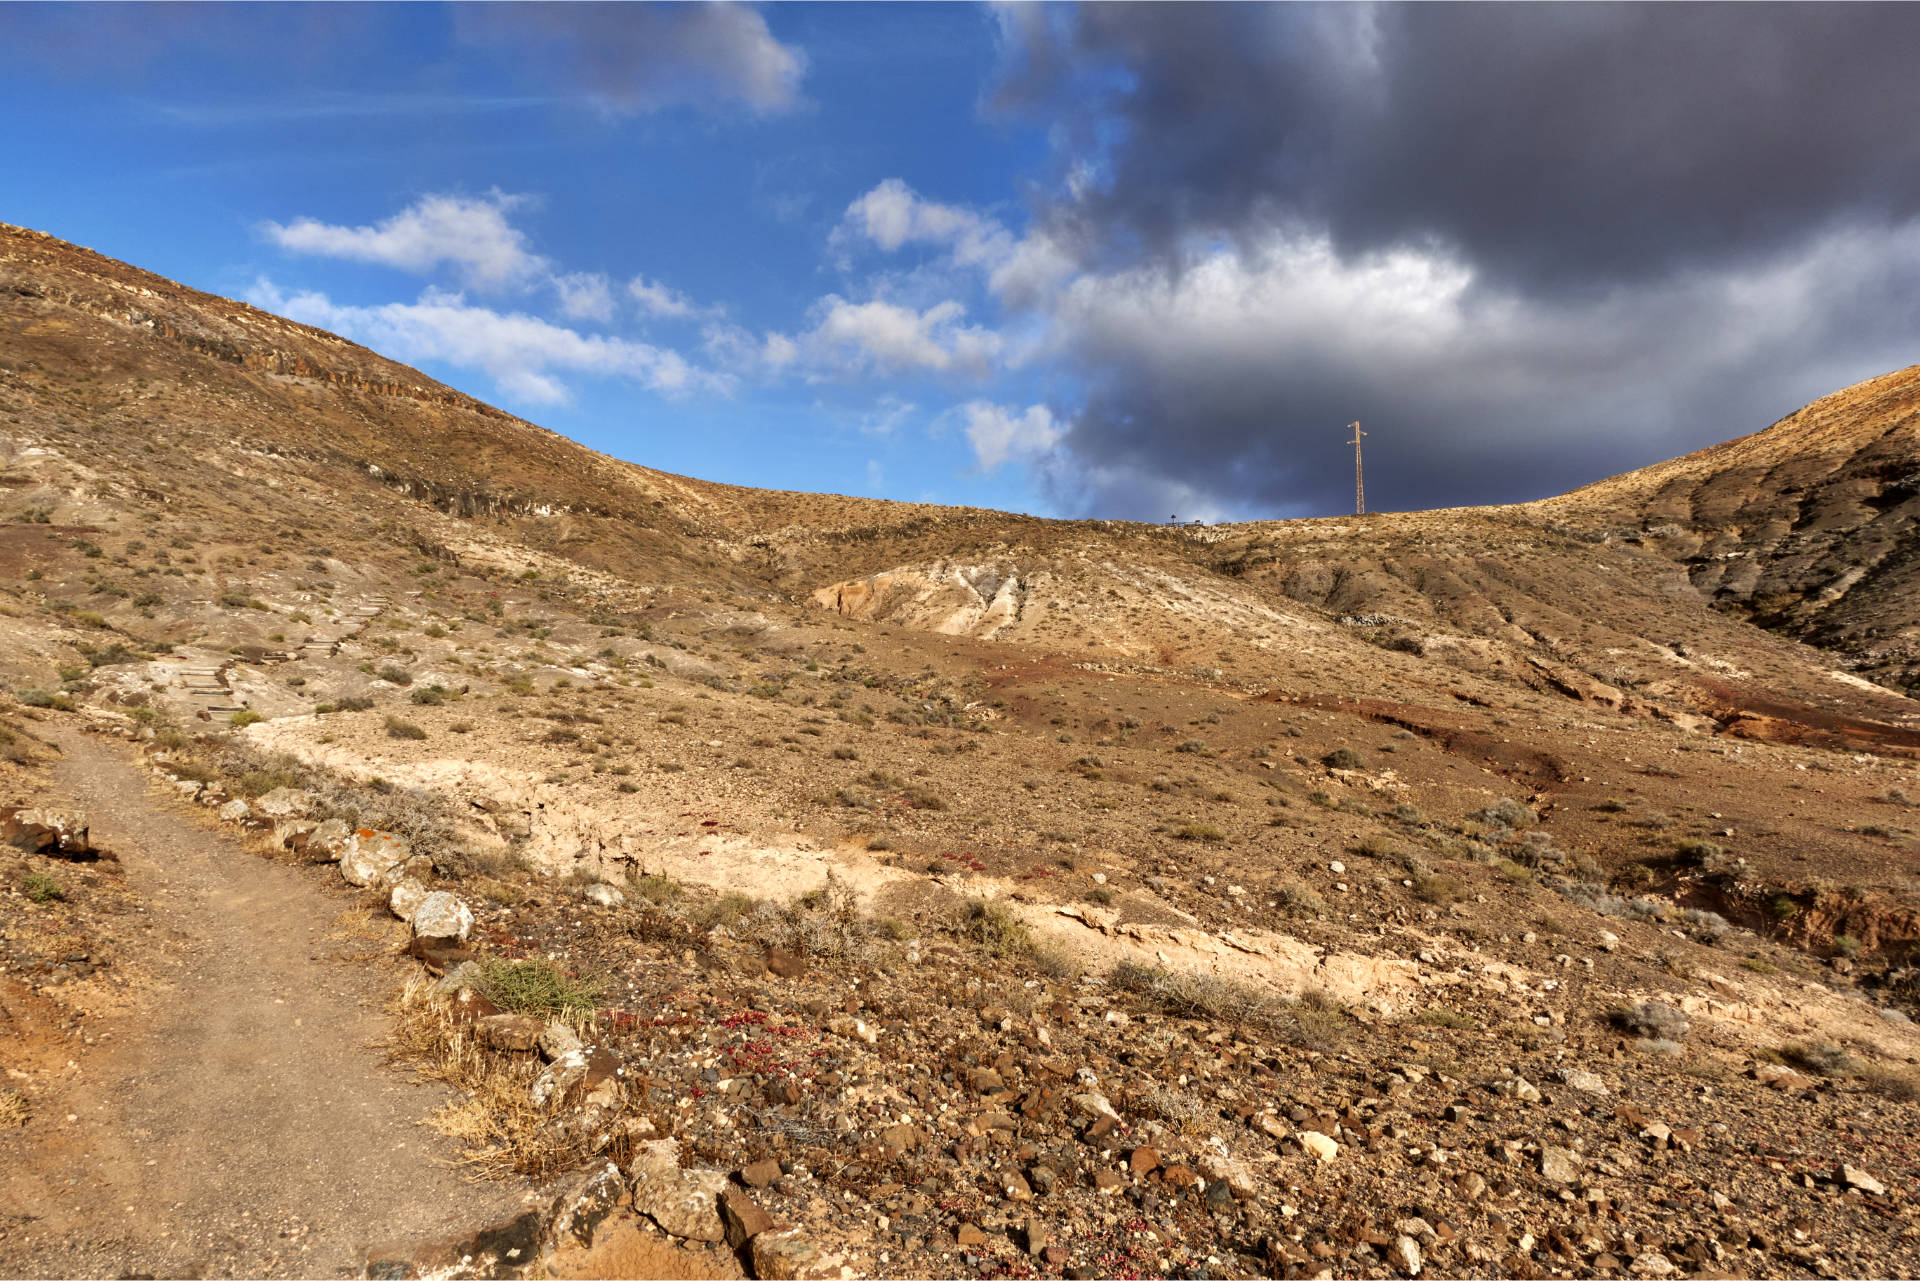 Wanderung zu der Quelle Fuente de Tababaire Fuerteventura.